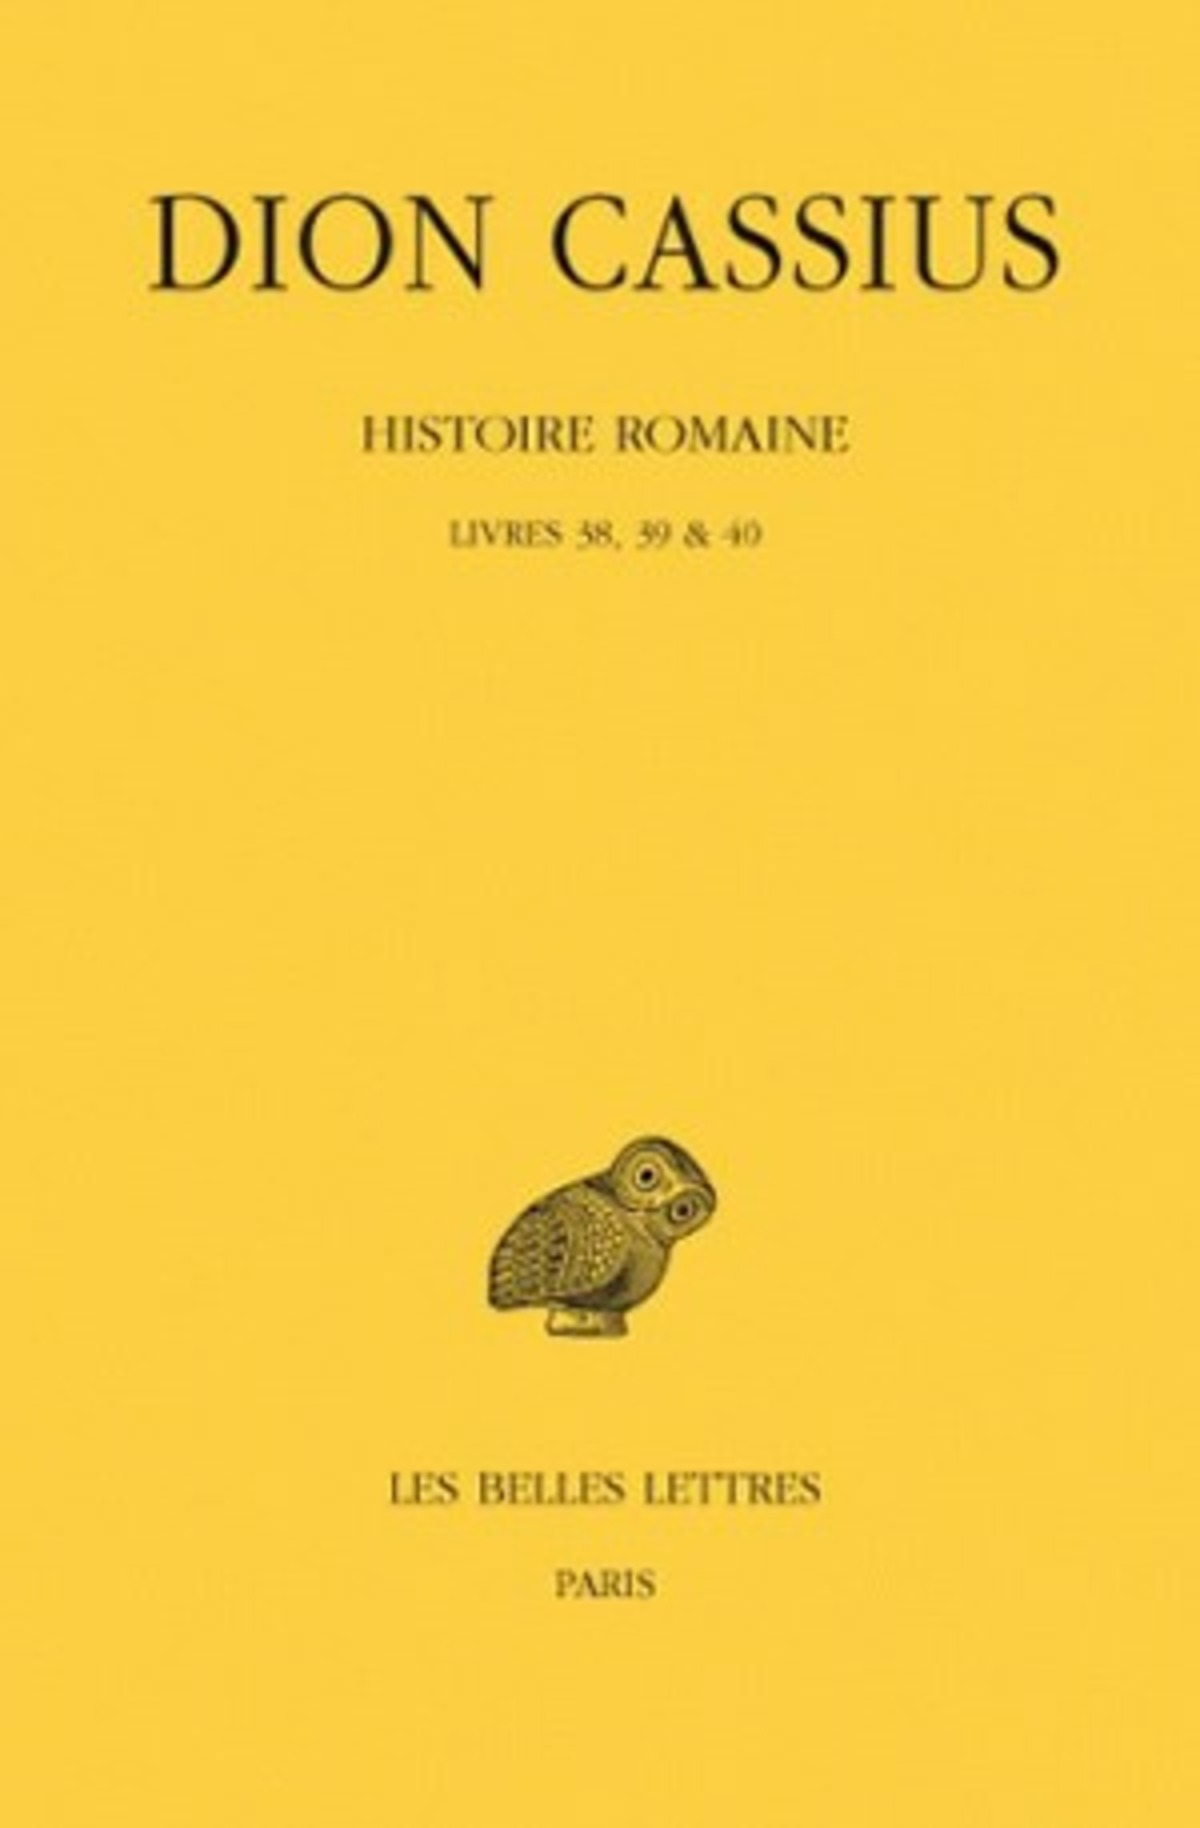 Histoire romaine. Livres 38, 39 & 40